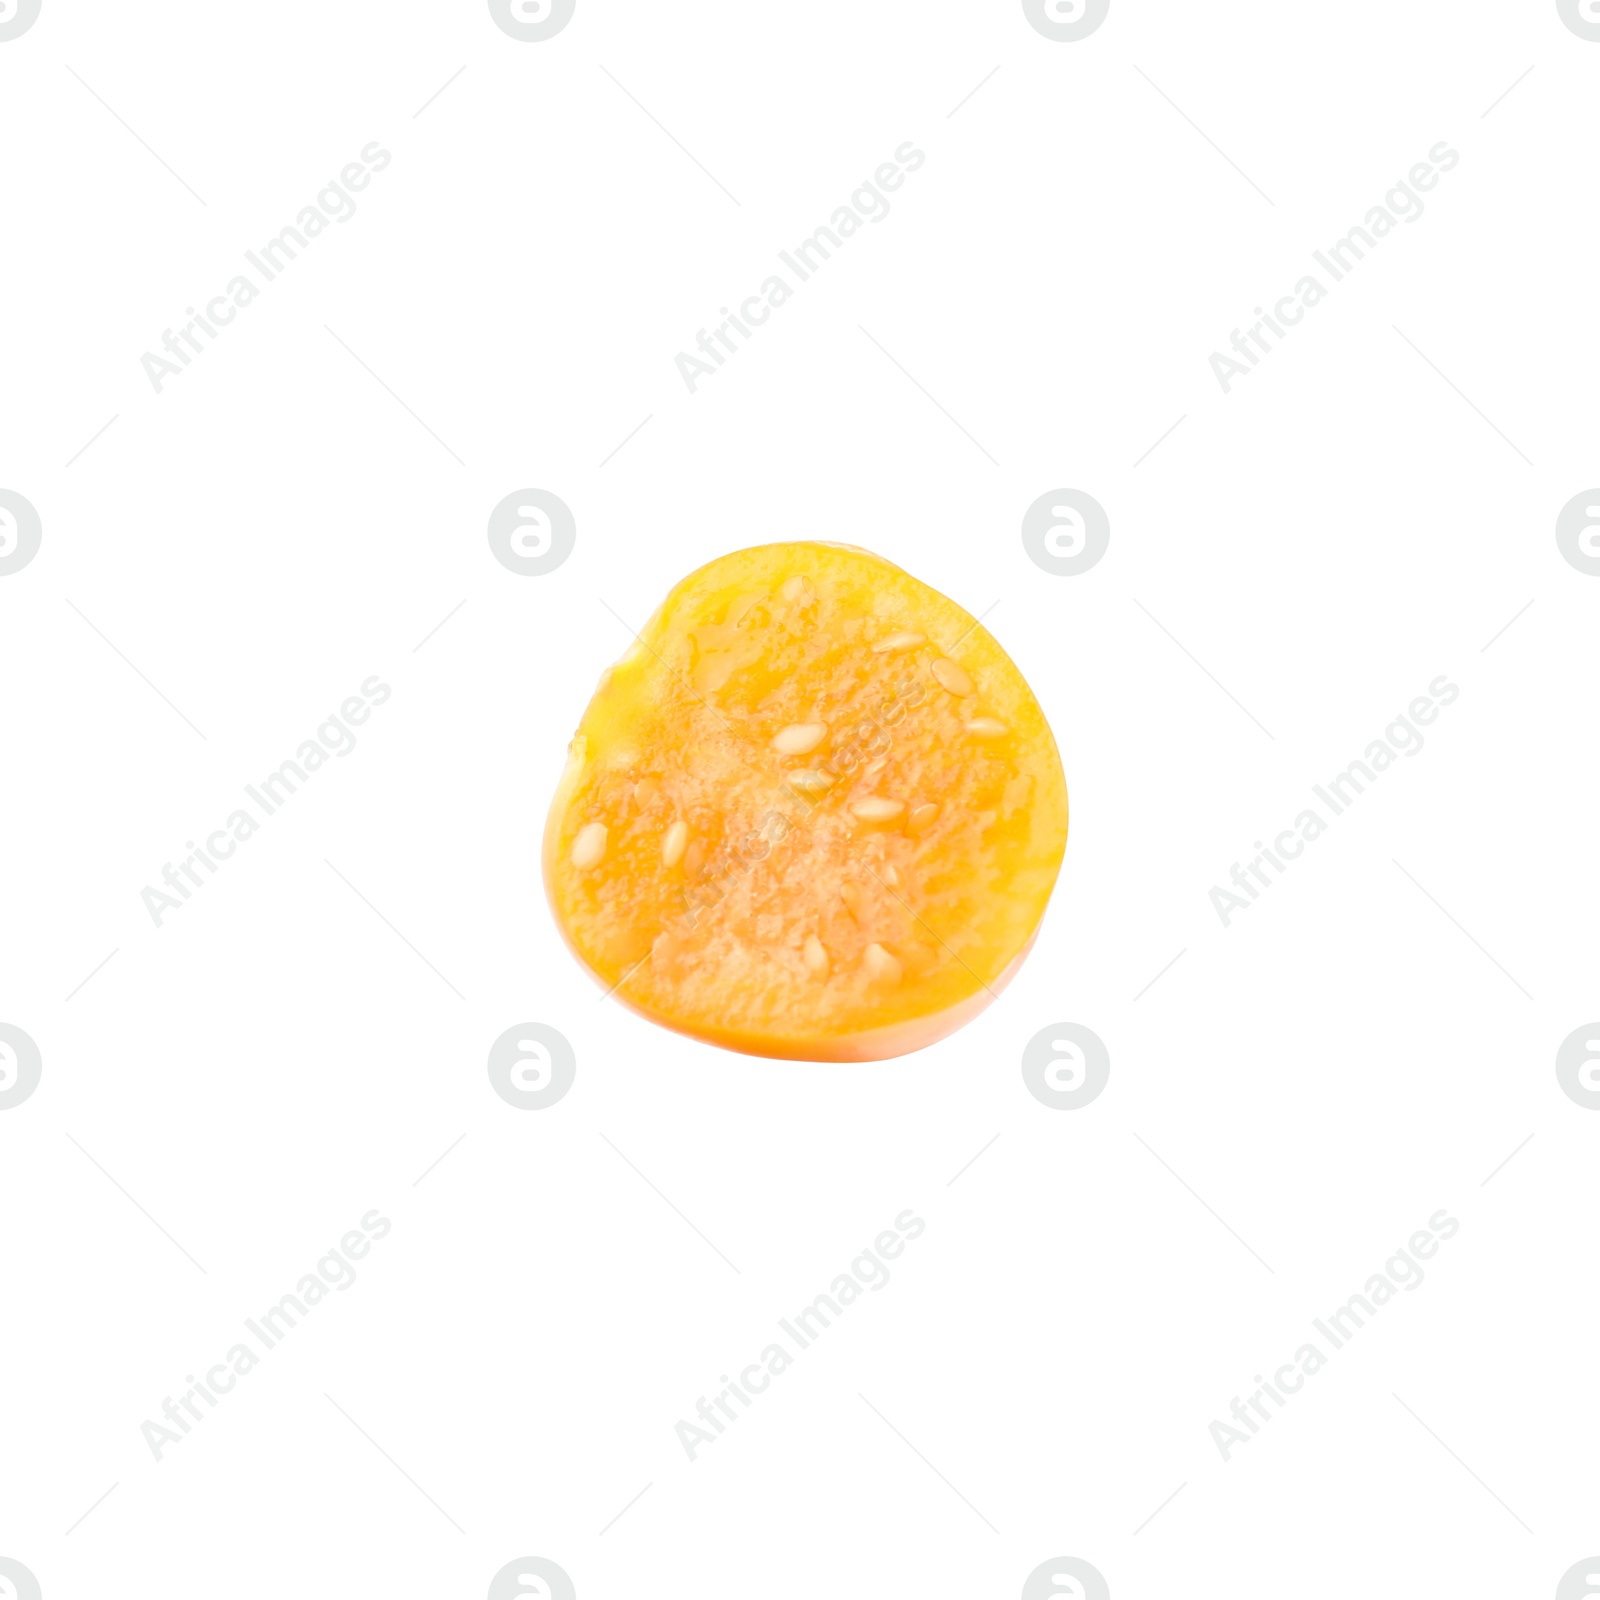 Photo of Half of ripe orange physalis fruit isolated on white